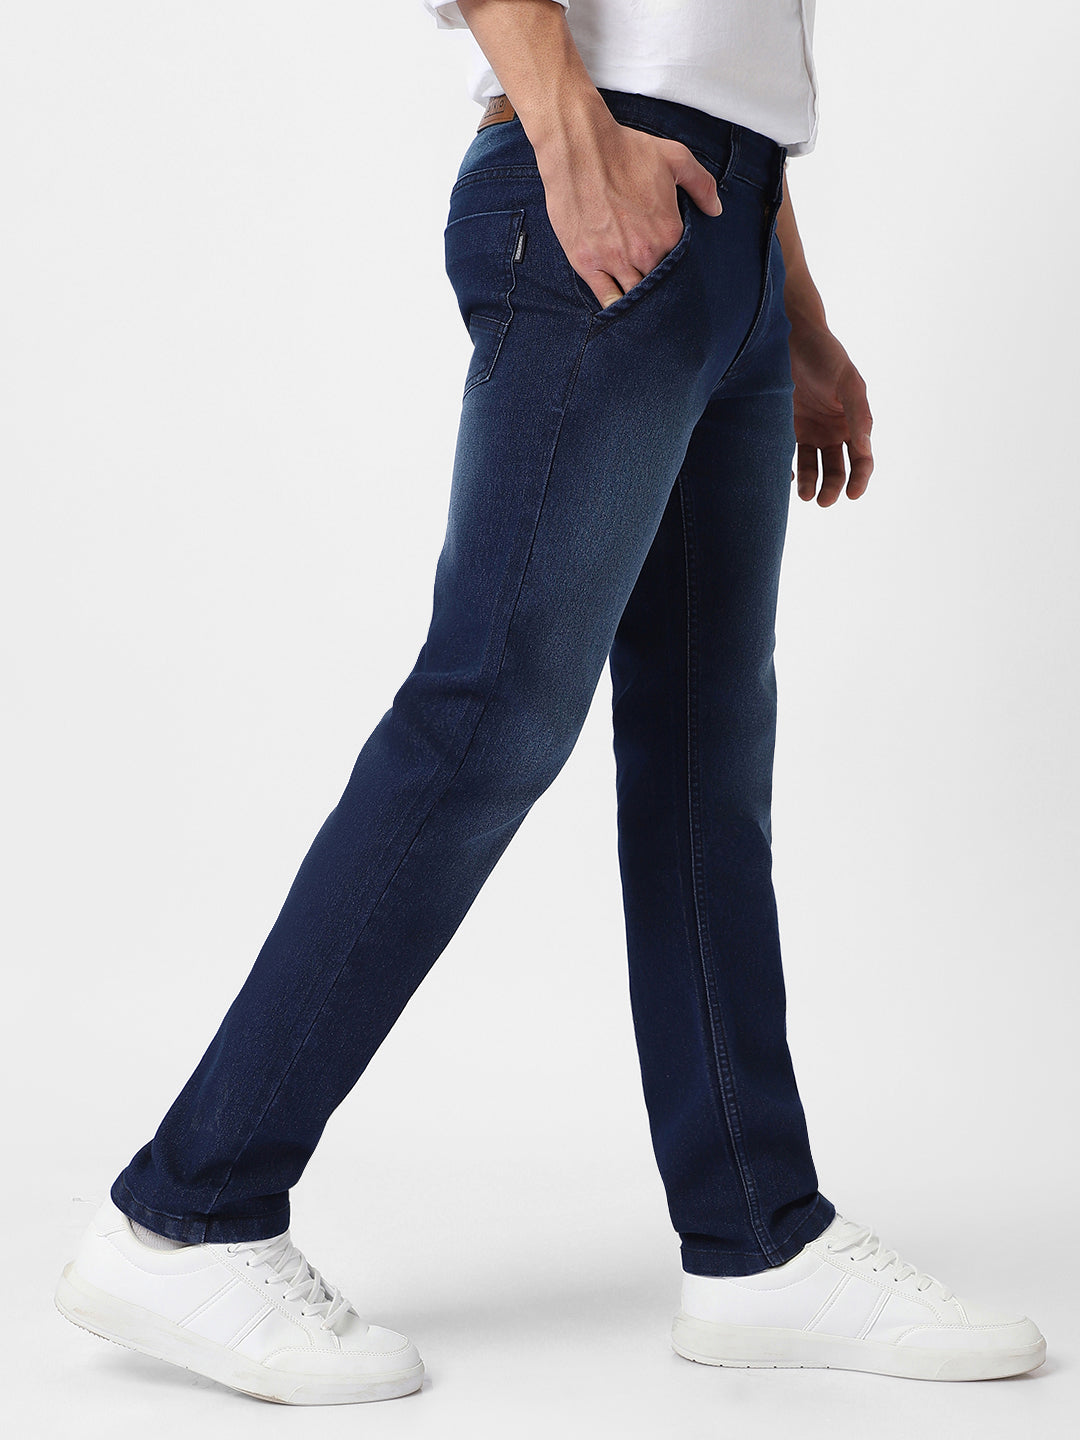 Men's Blue Regular Fit Washed Jeans Stretchable